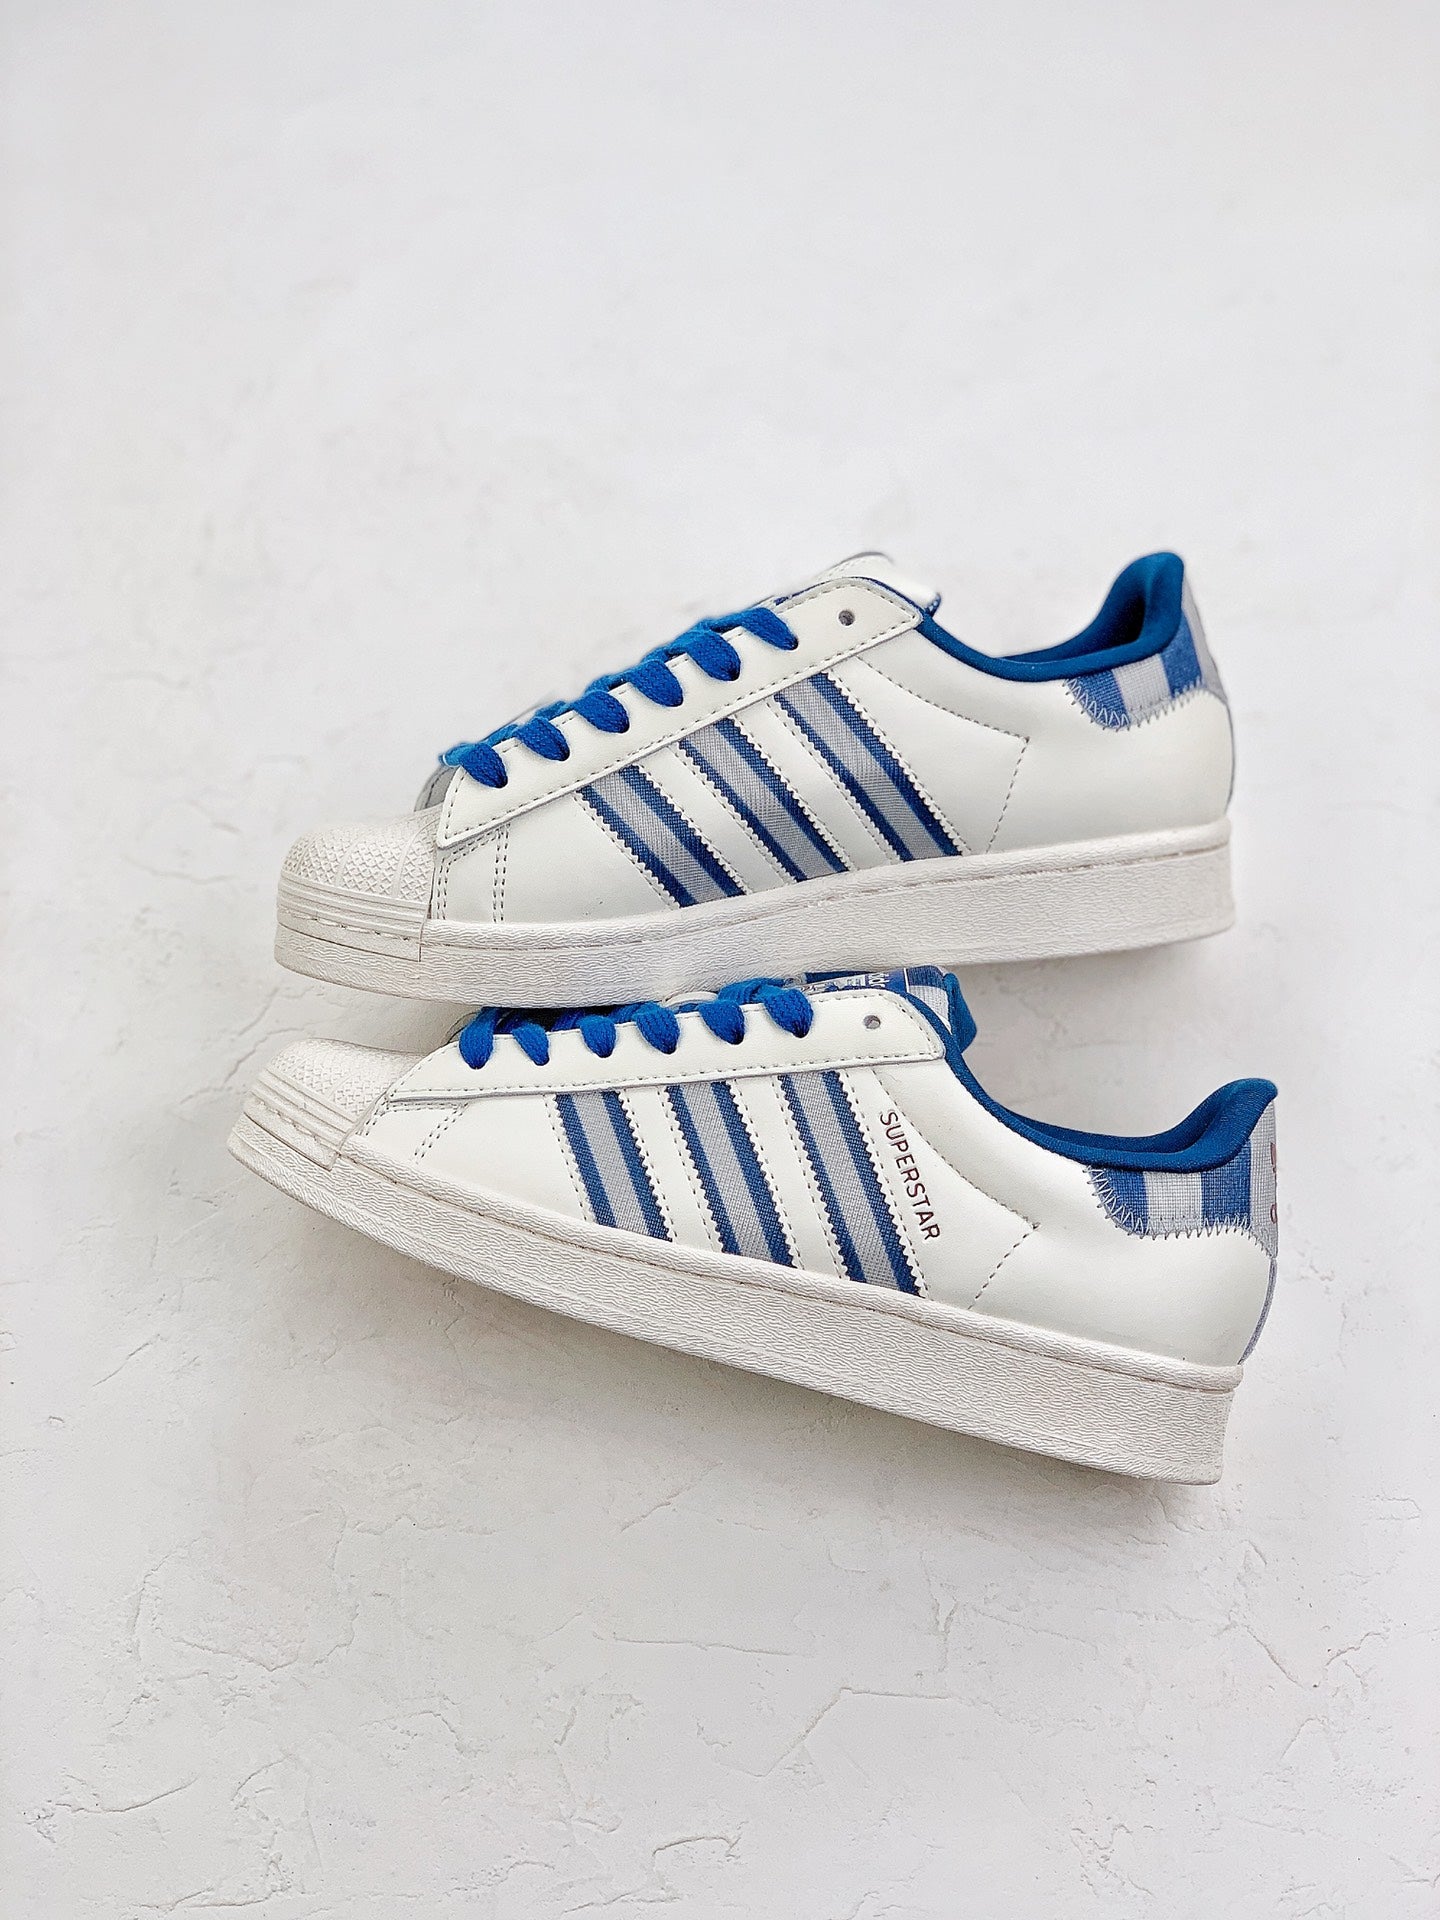 Adidas superstar white blue